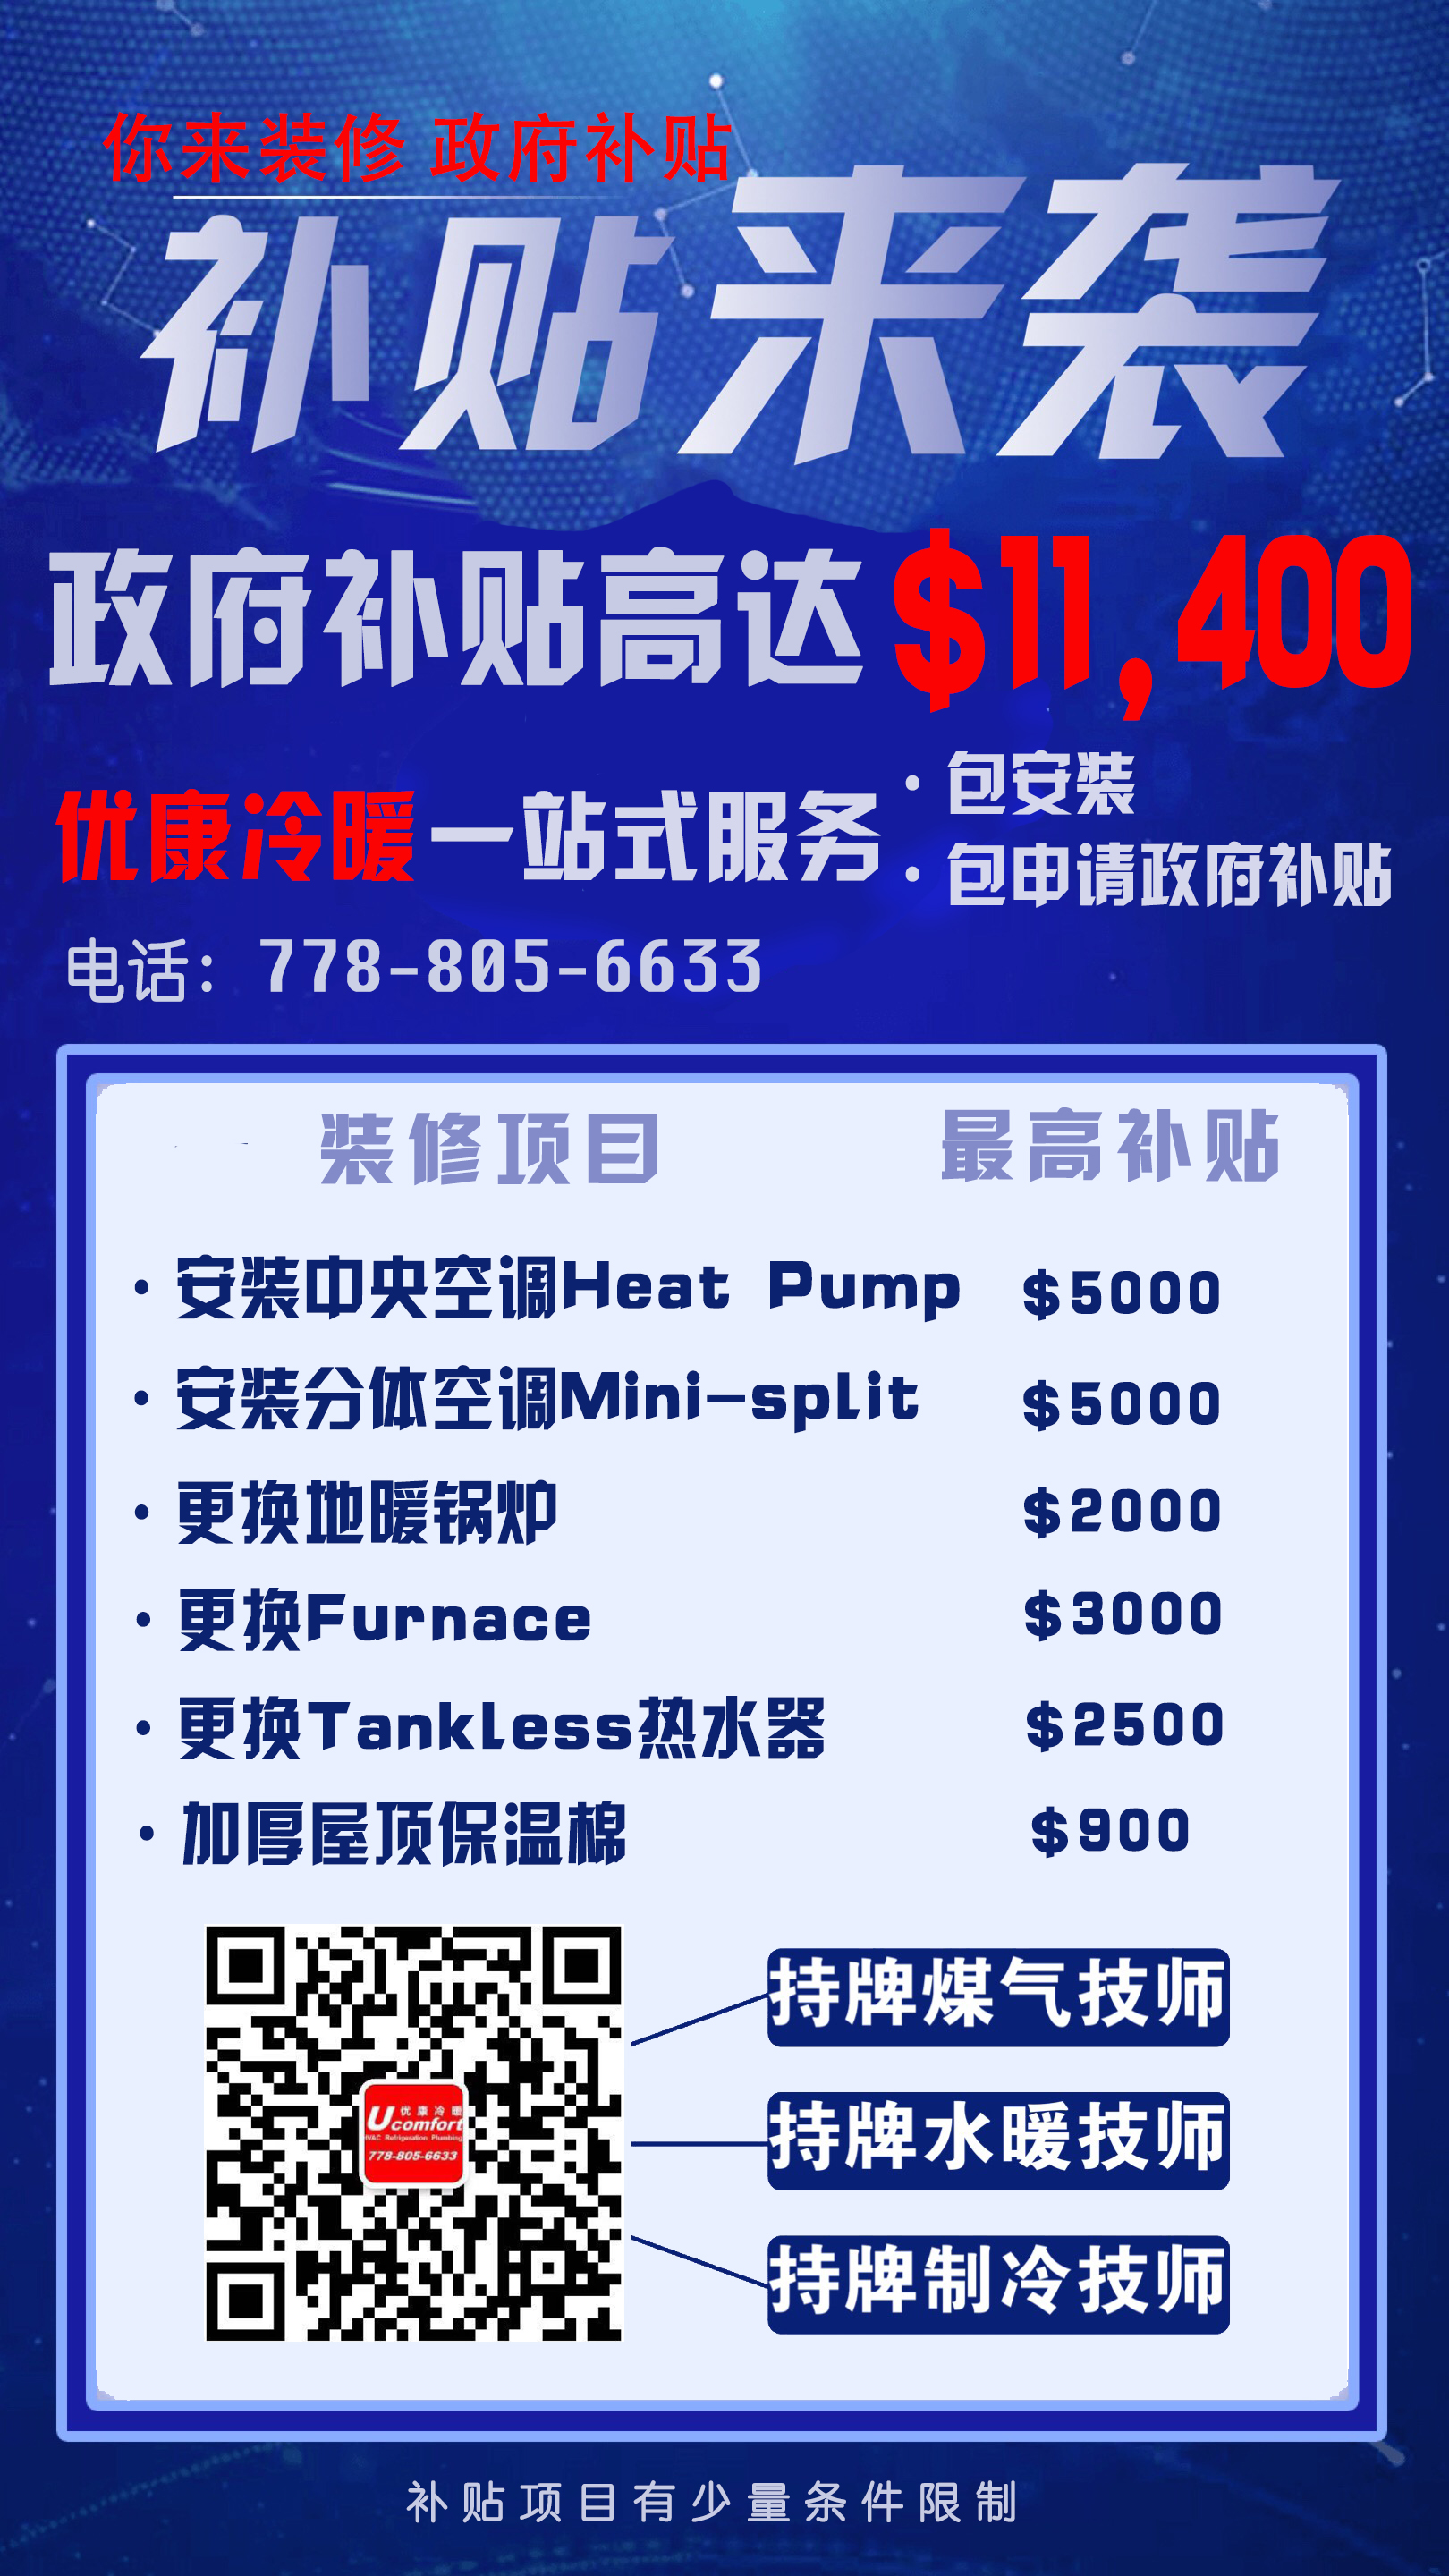 优康冷暖工程公司--代办政府装修补贴 高达$10,000+元 空调、热水炉等均可申请